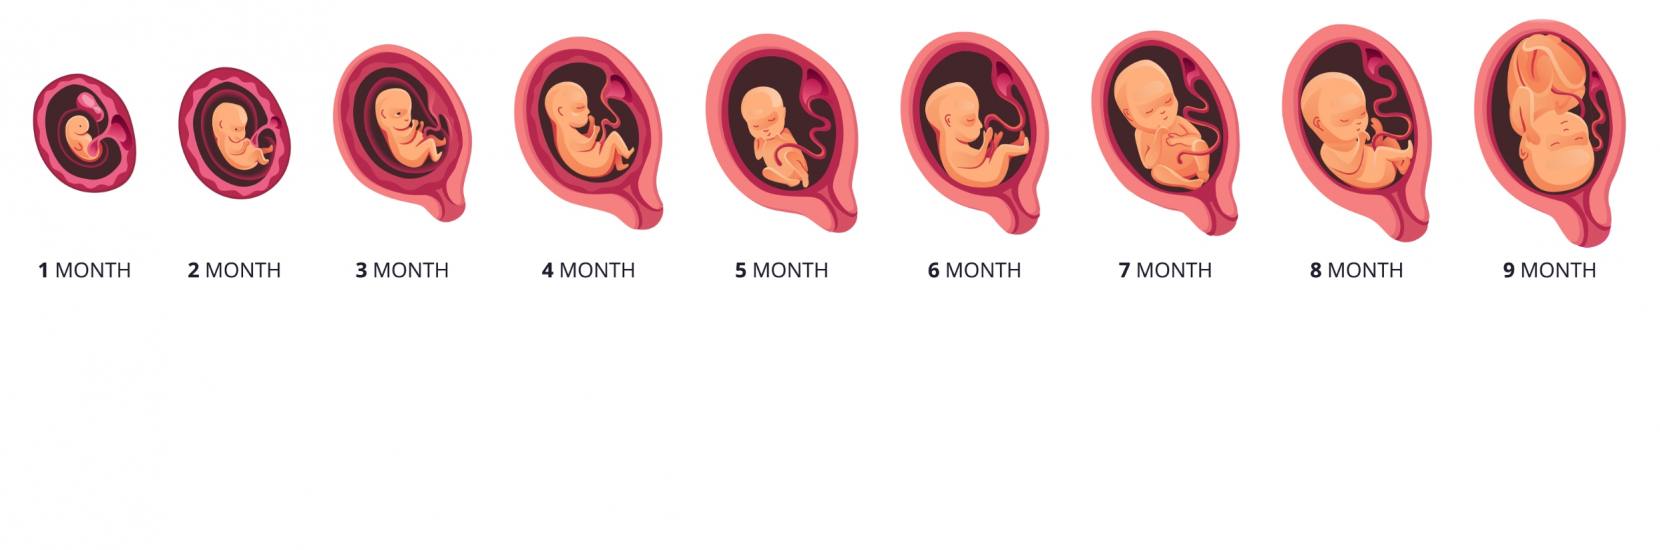 Bébé a 9 mois : le développement du bébé